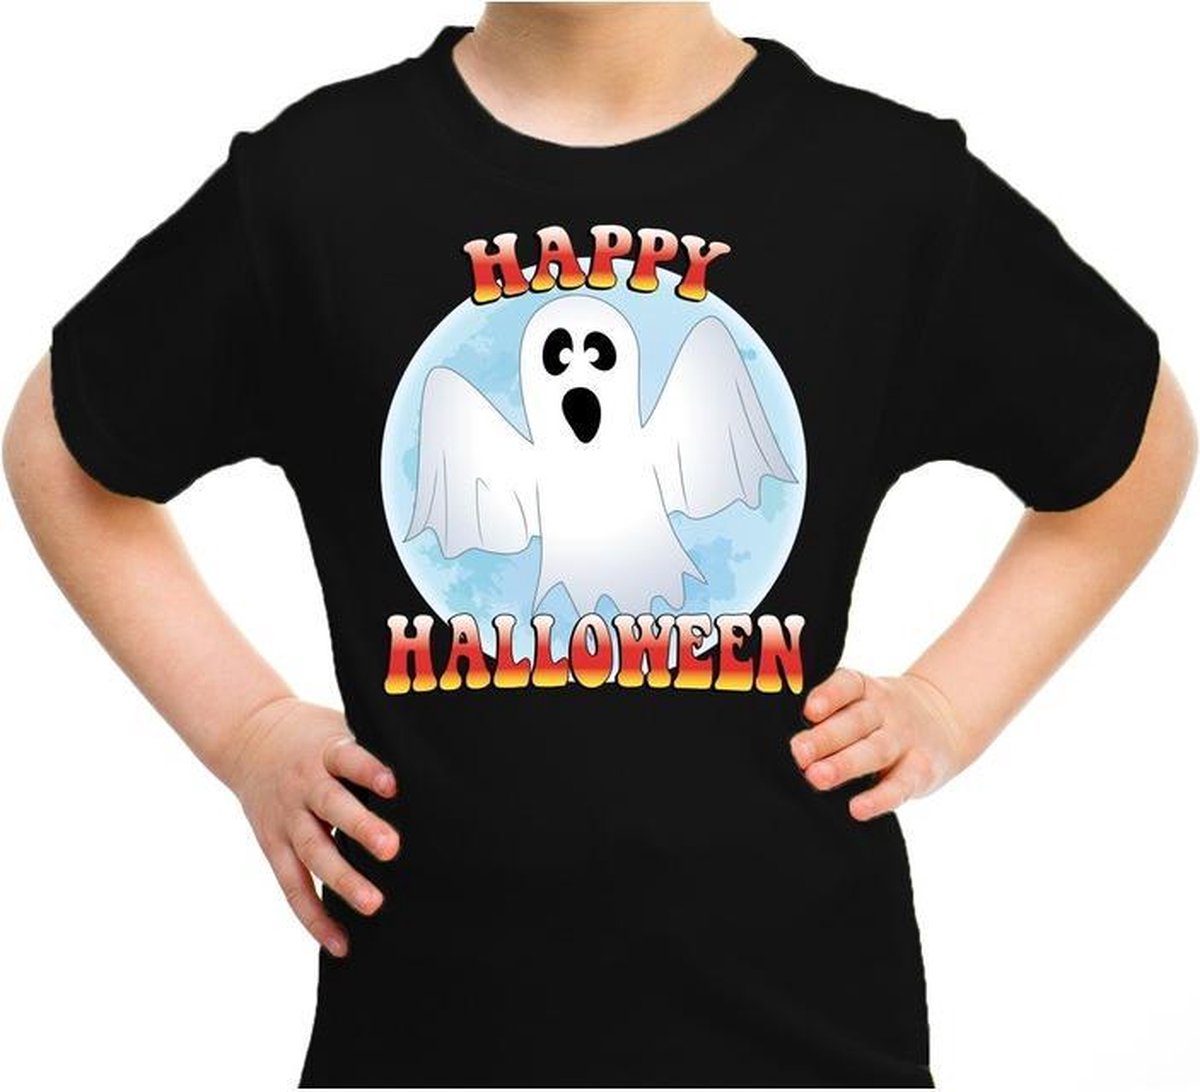 Afbeelding van product Bellatio Decorations  Halloween - Happy Halloween spook verkleed t-shirt zwart voor kinderen - horror spook shirt / kleding / kostuum 146/152  - maat 146/152